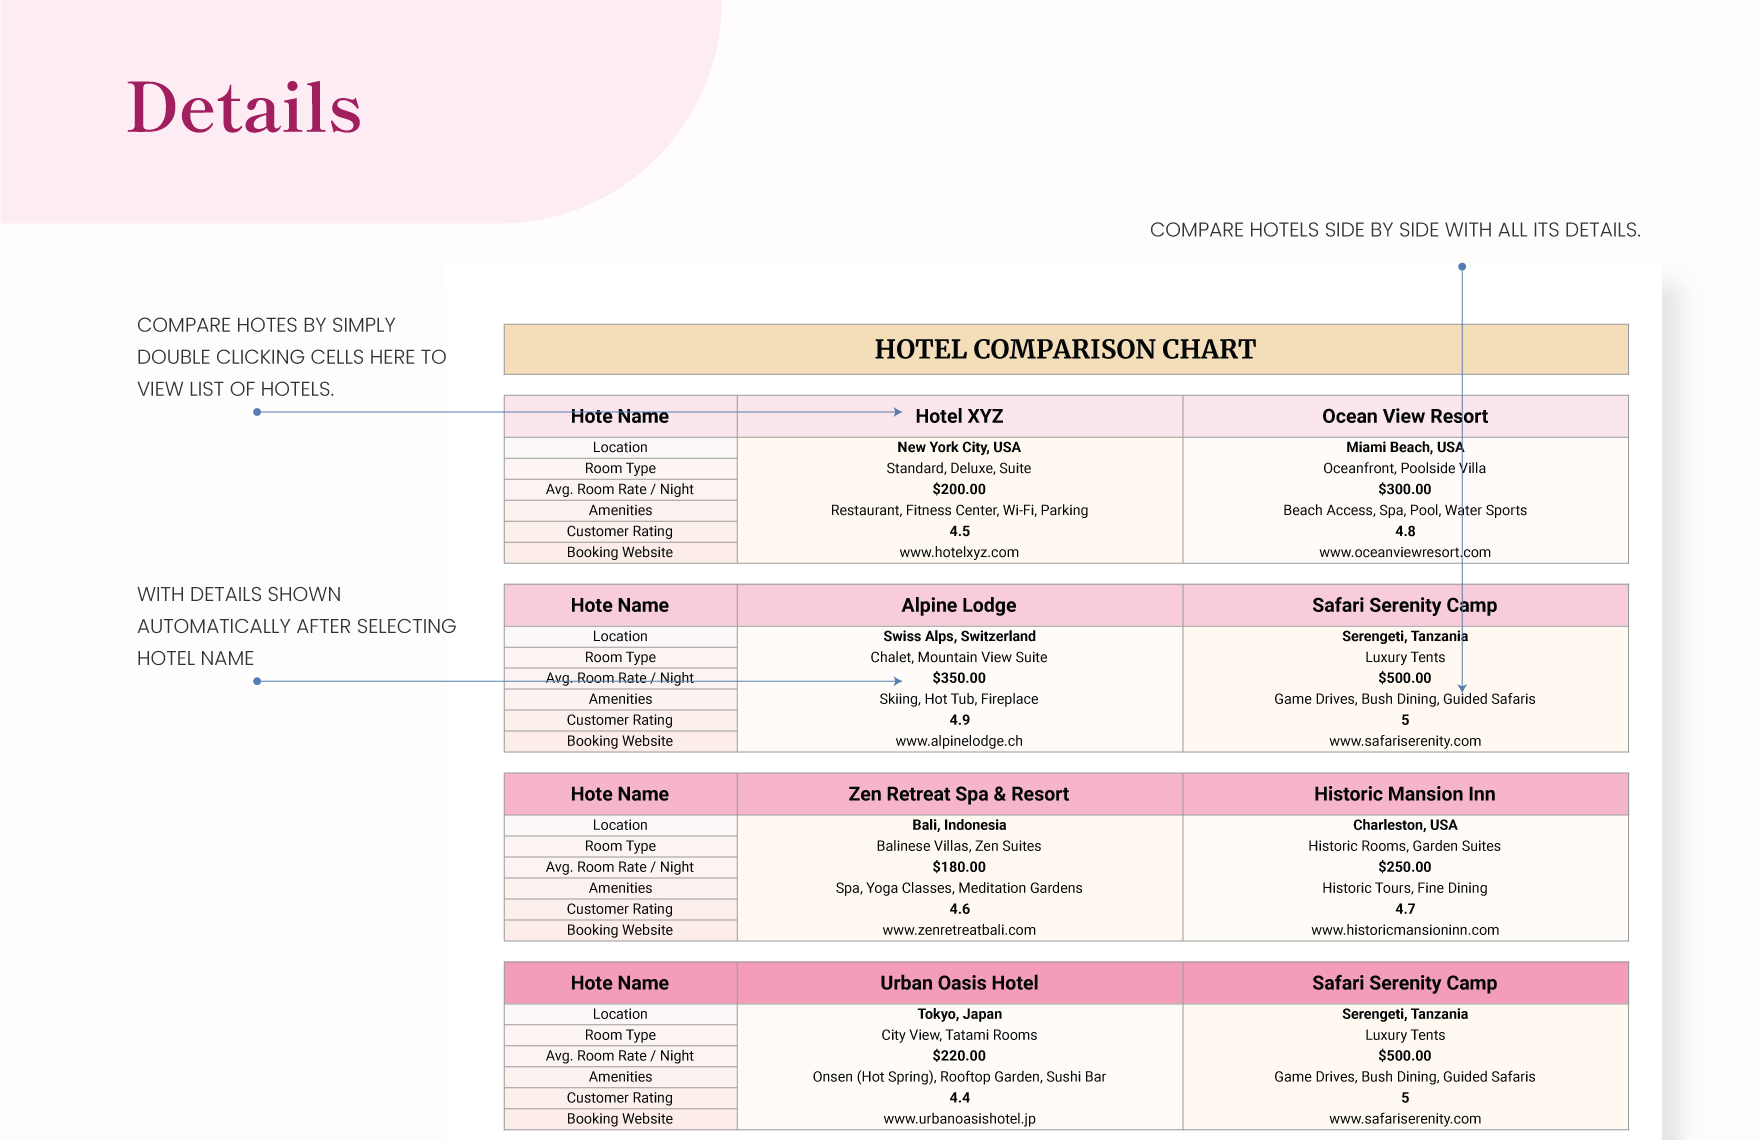 Hotel Comparison Chart Template